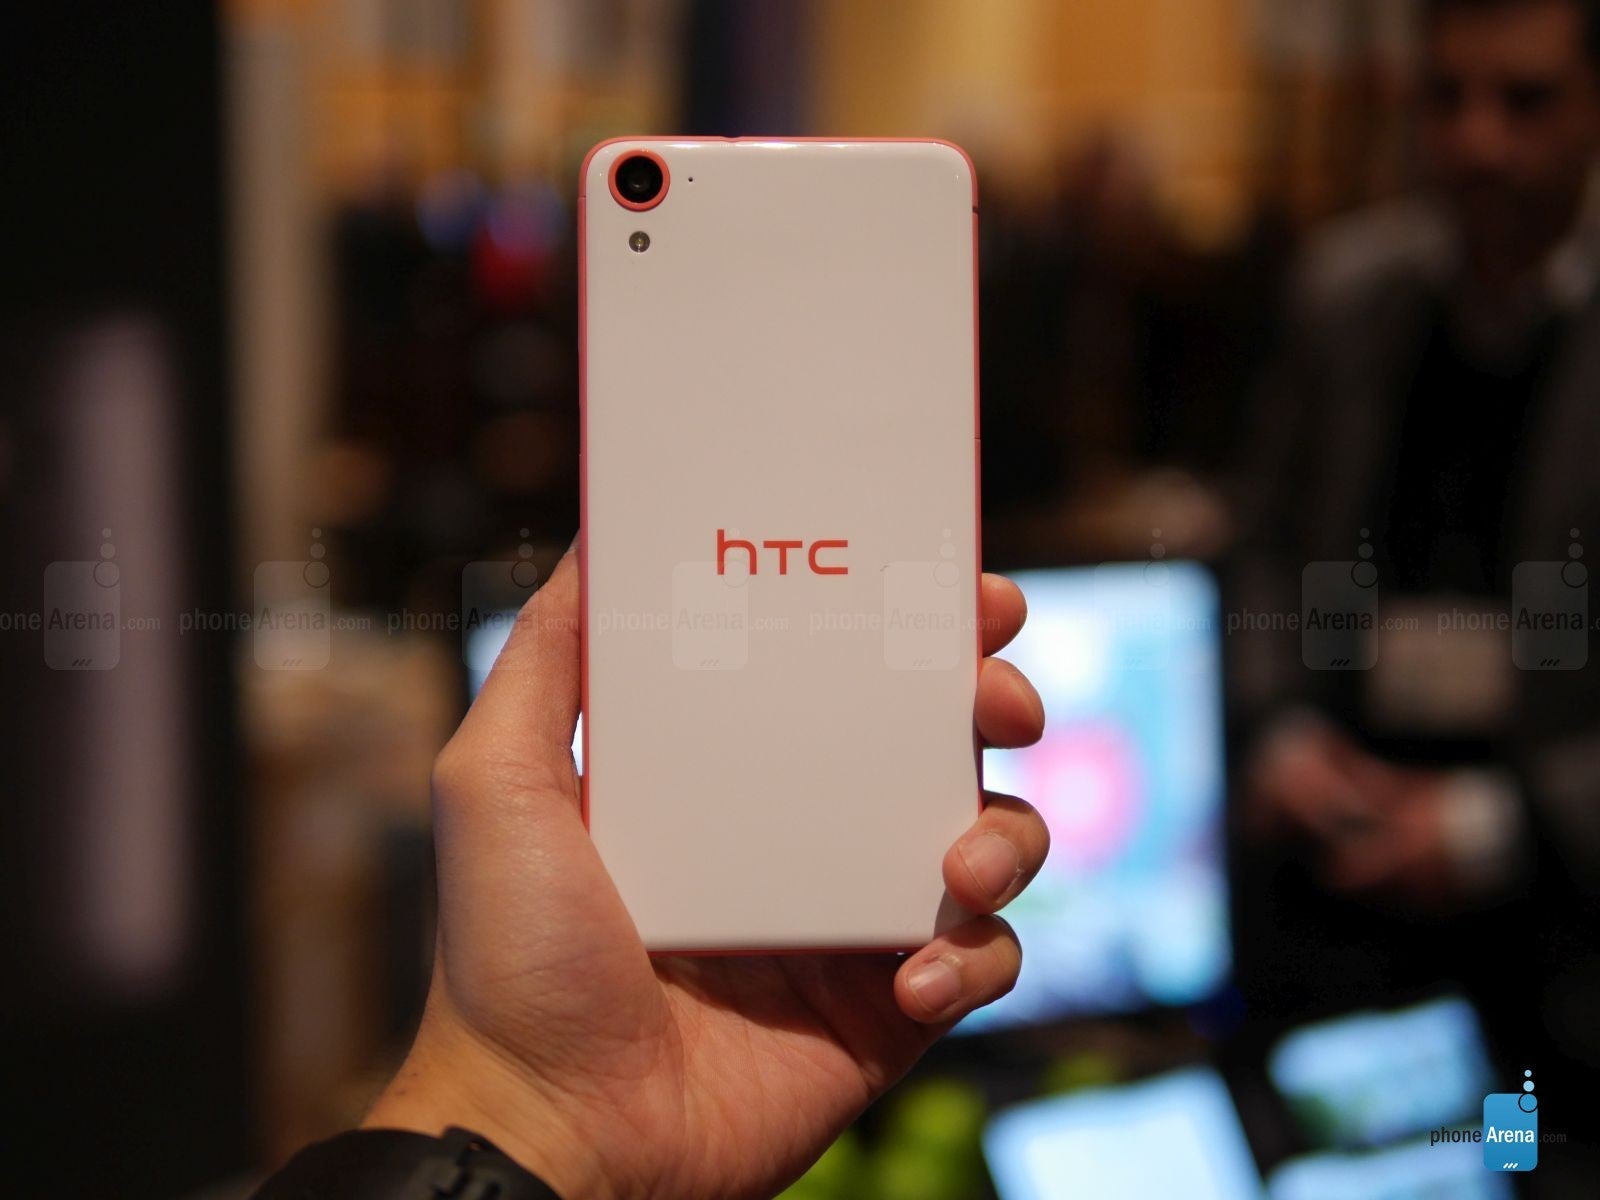 HTC One specs - PhoneArena